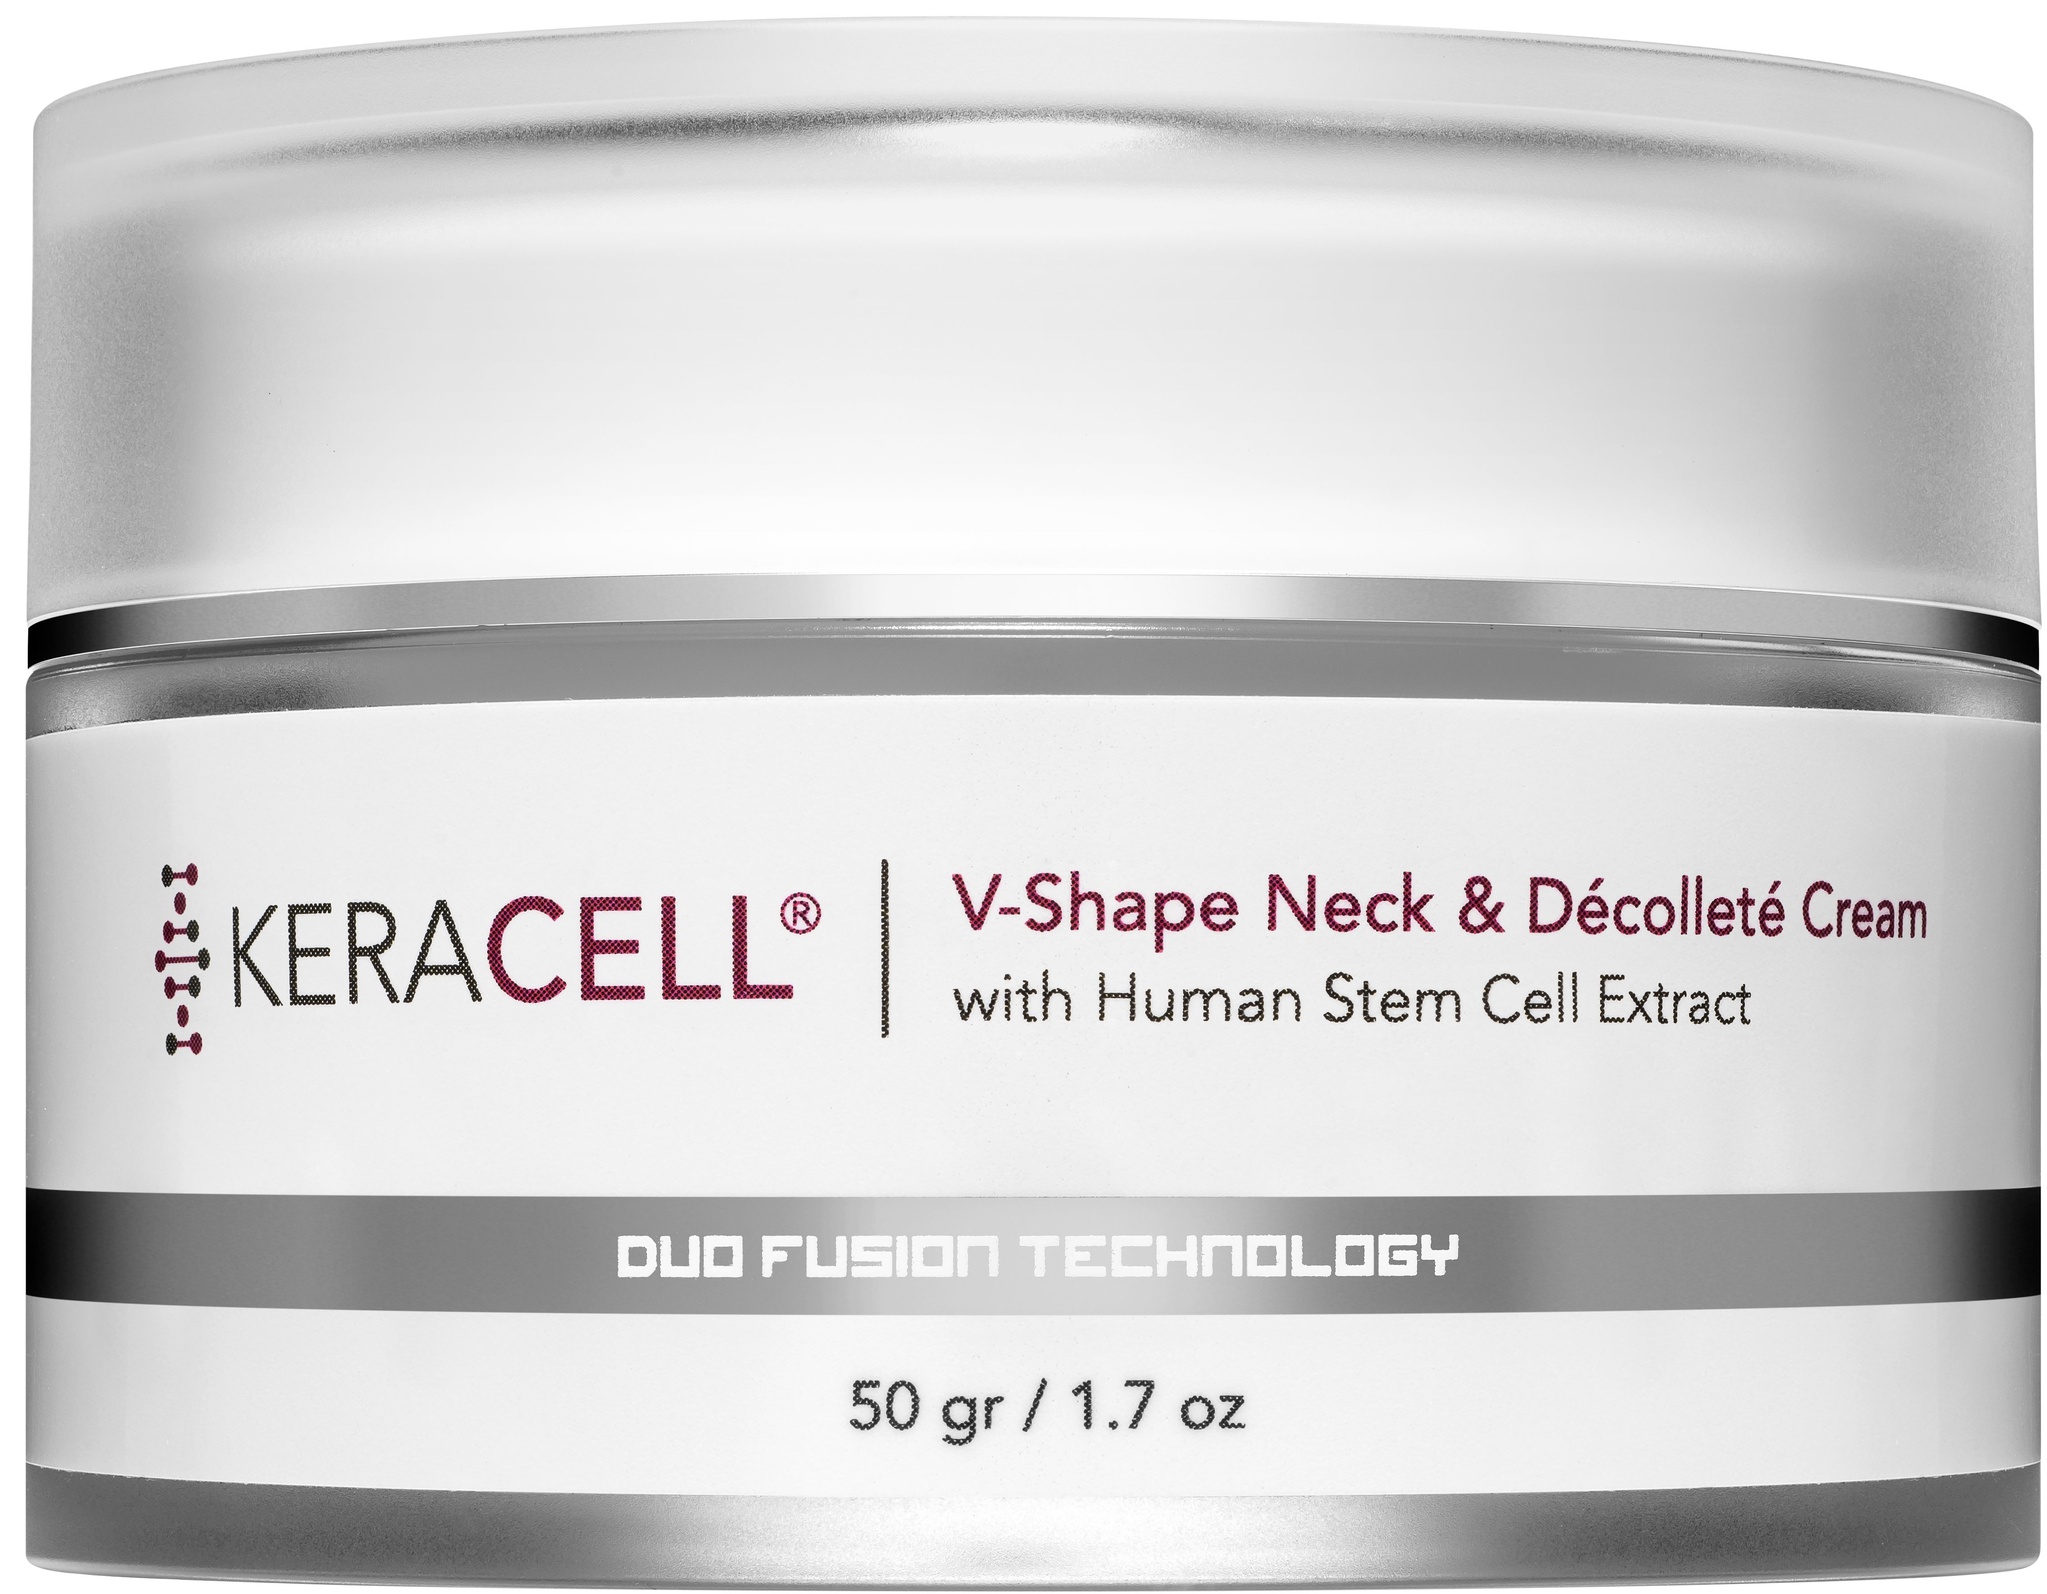 Keracell V-shape Neck & Décolleté Cream